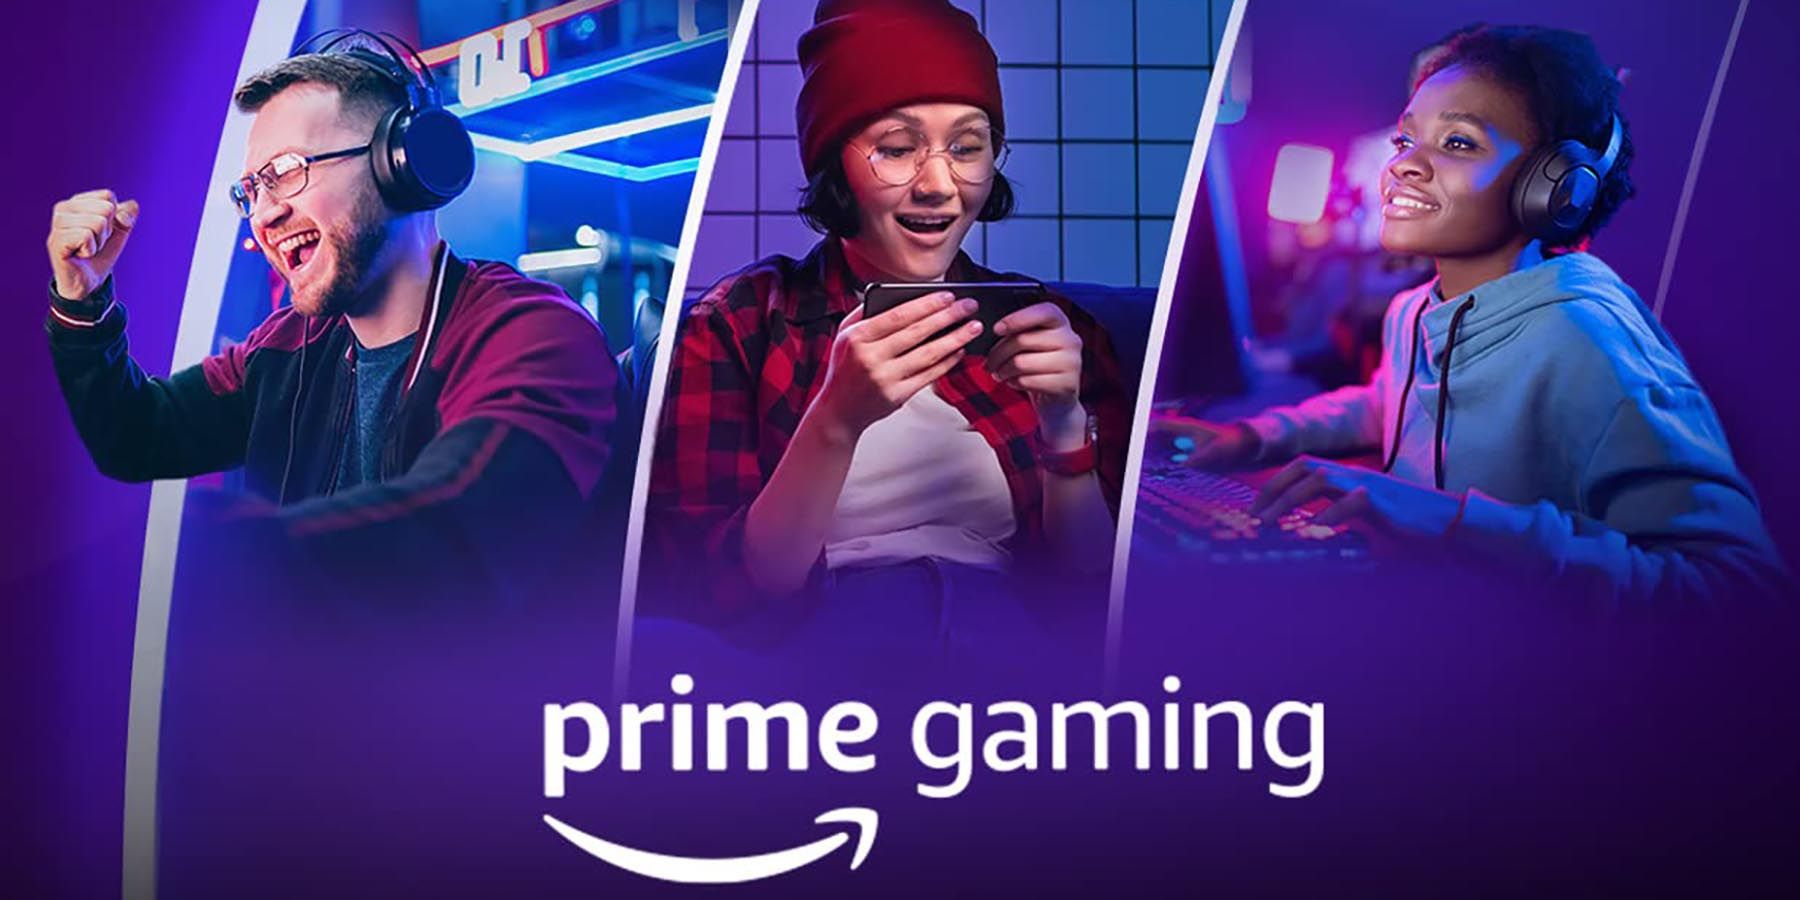 Prime Gaming's Free Games for June 2022 Run the Gamut